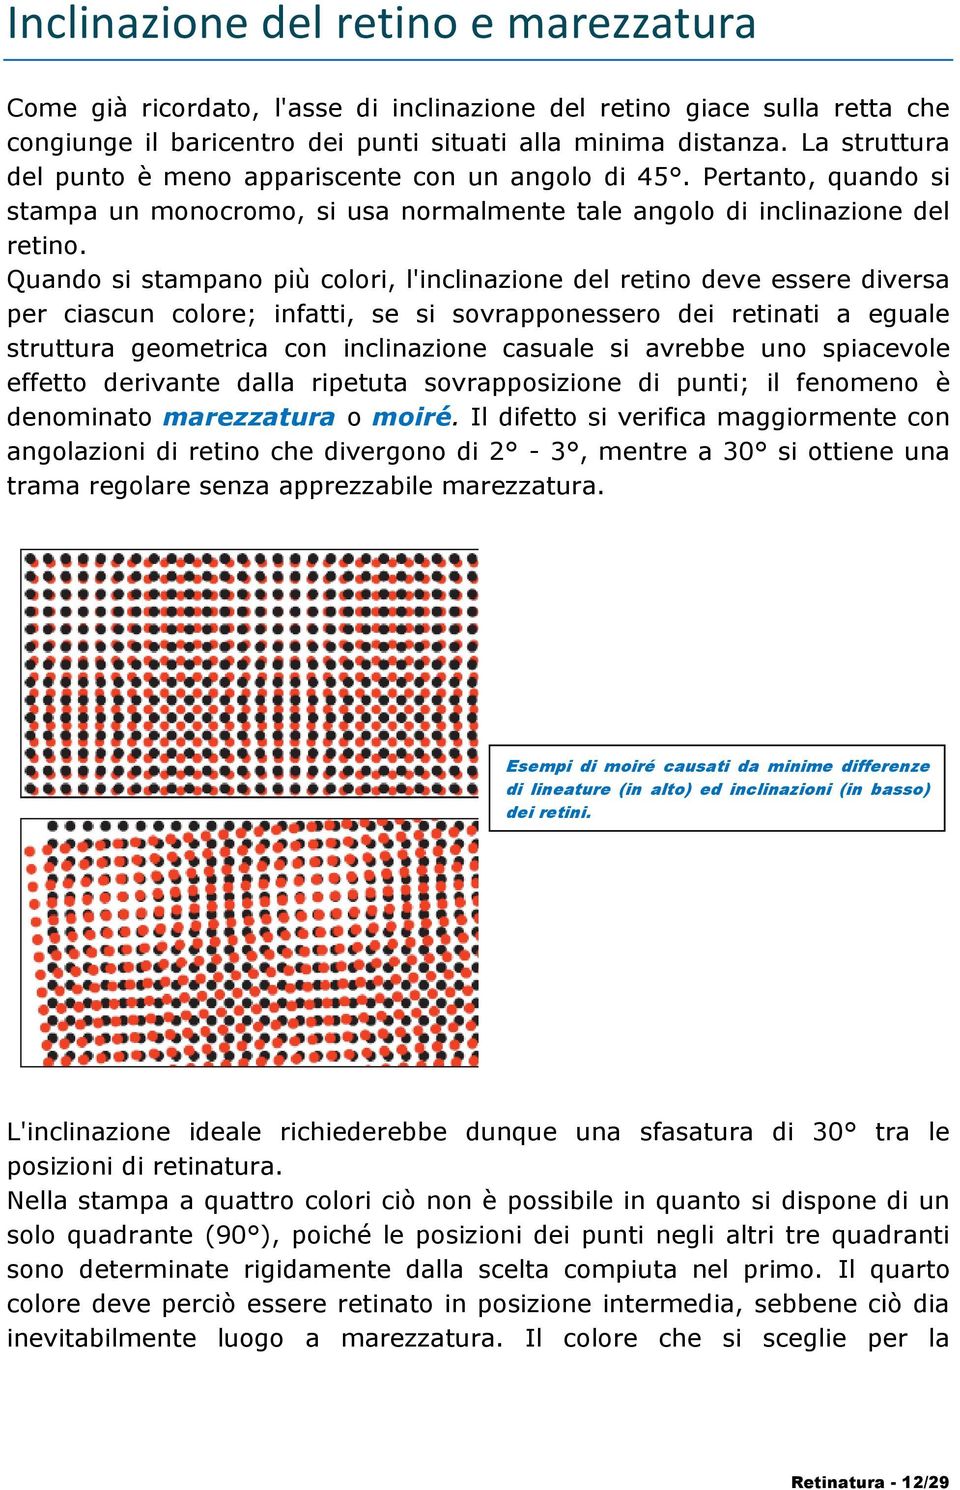 Quando si stampano più colori, l'inclinazione del retino deve essere diversa per ciascun colore; infatti, se si sovrapponessero dei retinati a eguale struttura geometrica con inclinazione casuale si